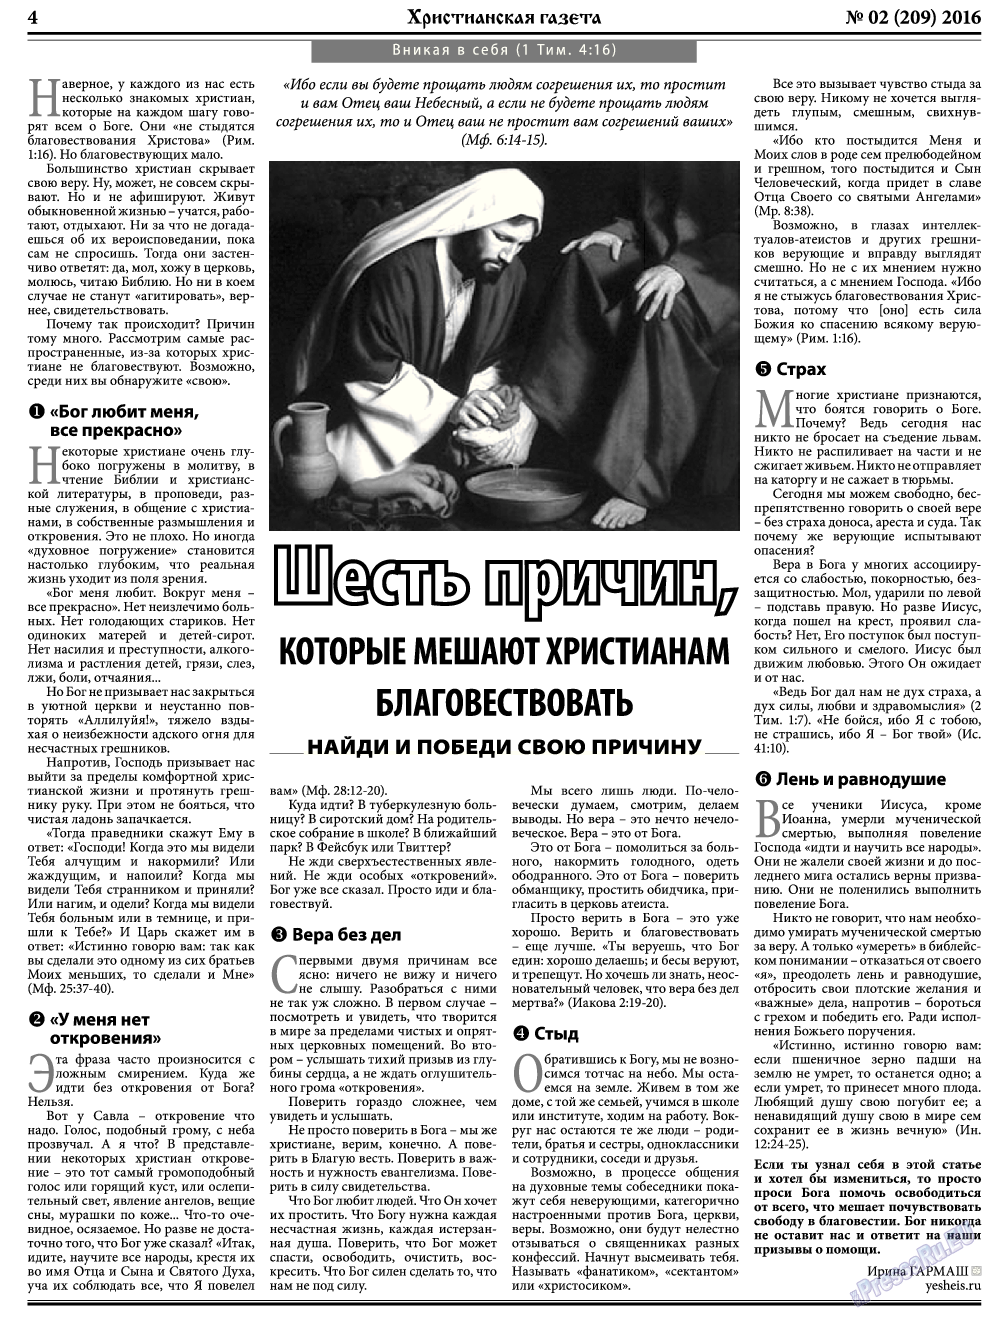 Христианская газета, газета. 2016 №2 стр.4